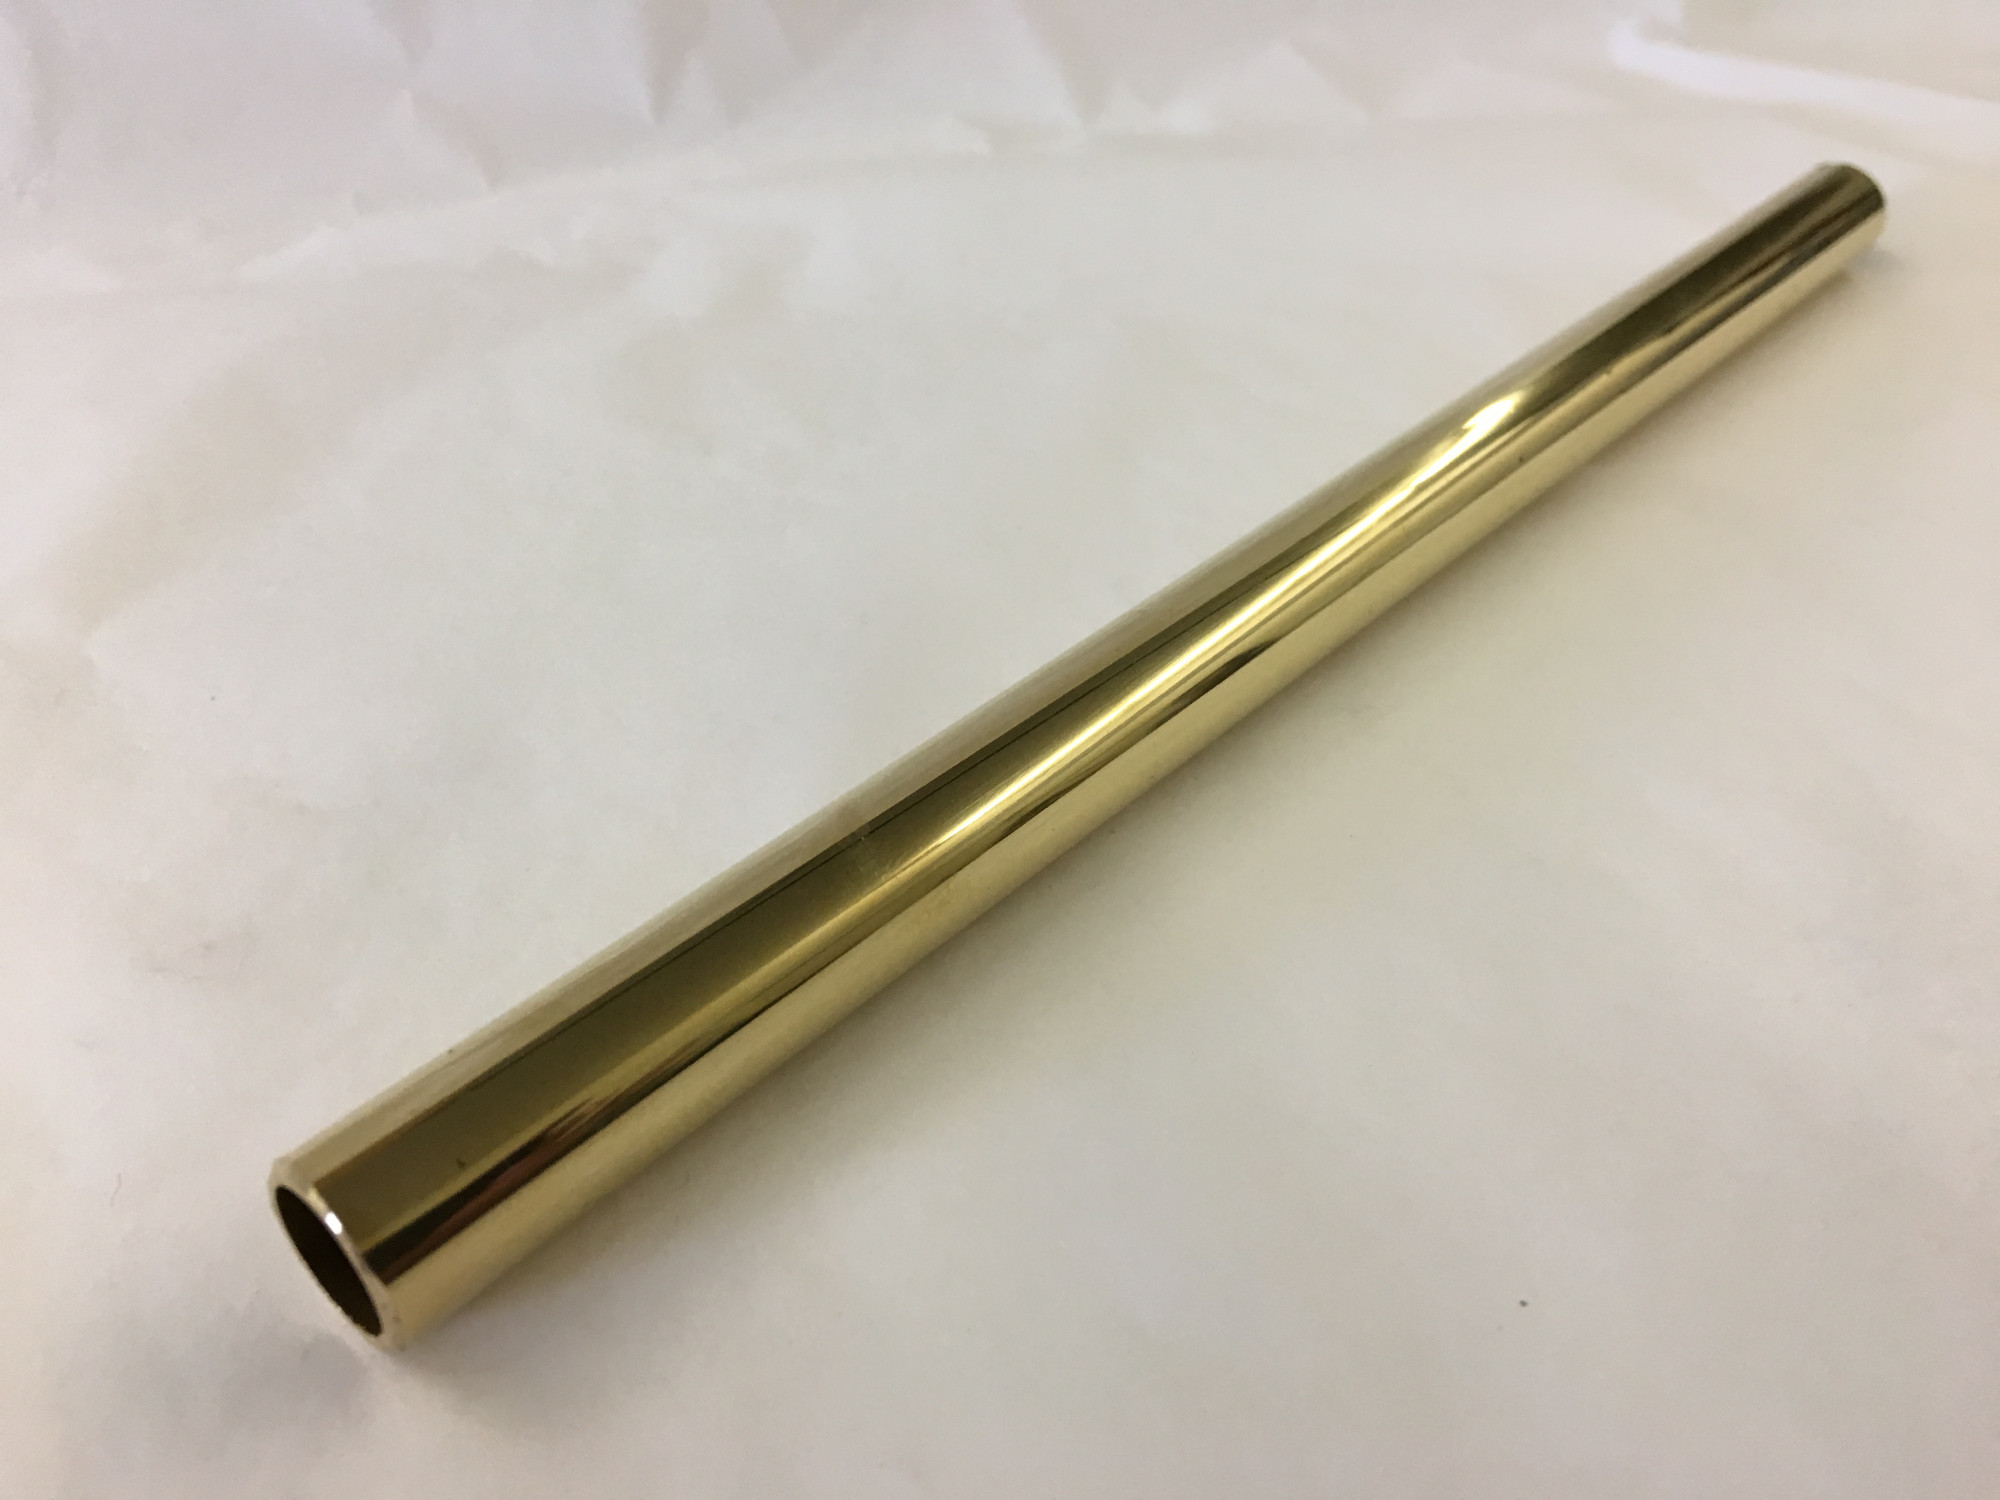 Brass Tube-1pc Brass Tube Pipe Tubing Round Outer Diameter 0.6-2cm Length 50cm Model Making 外径16mm 